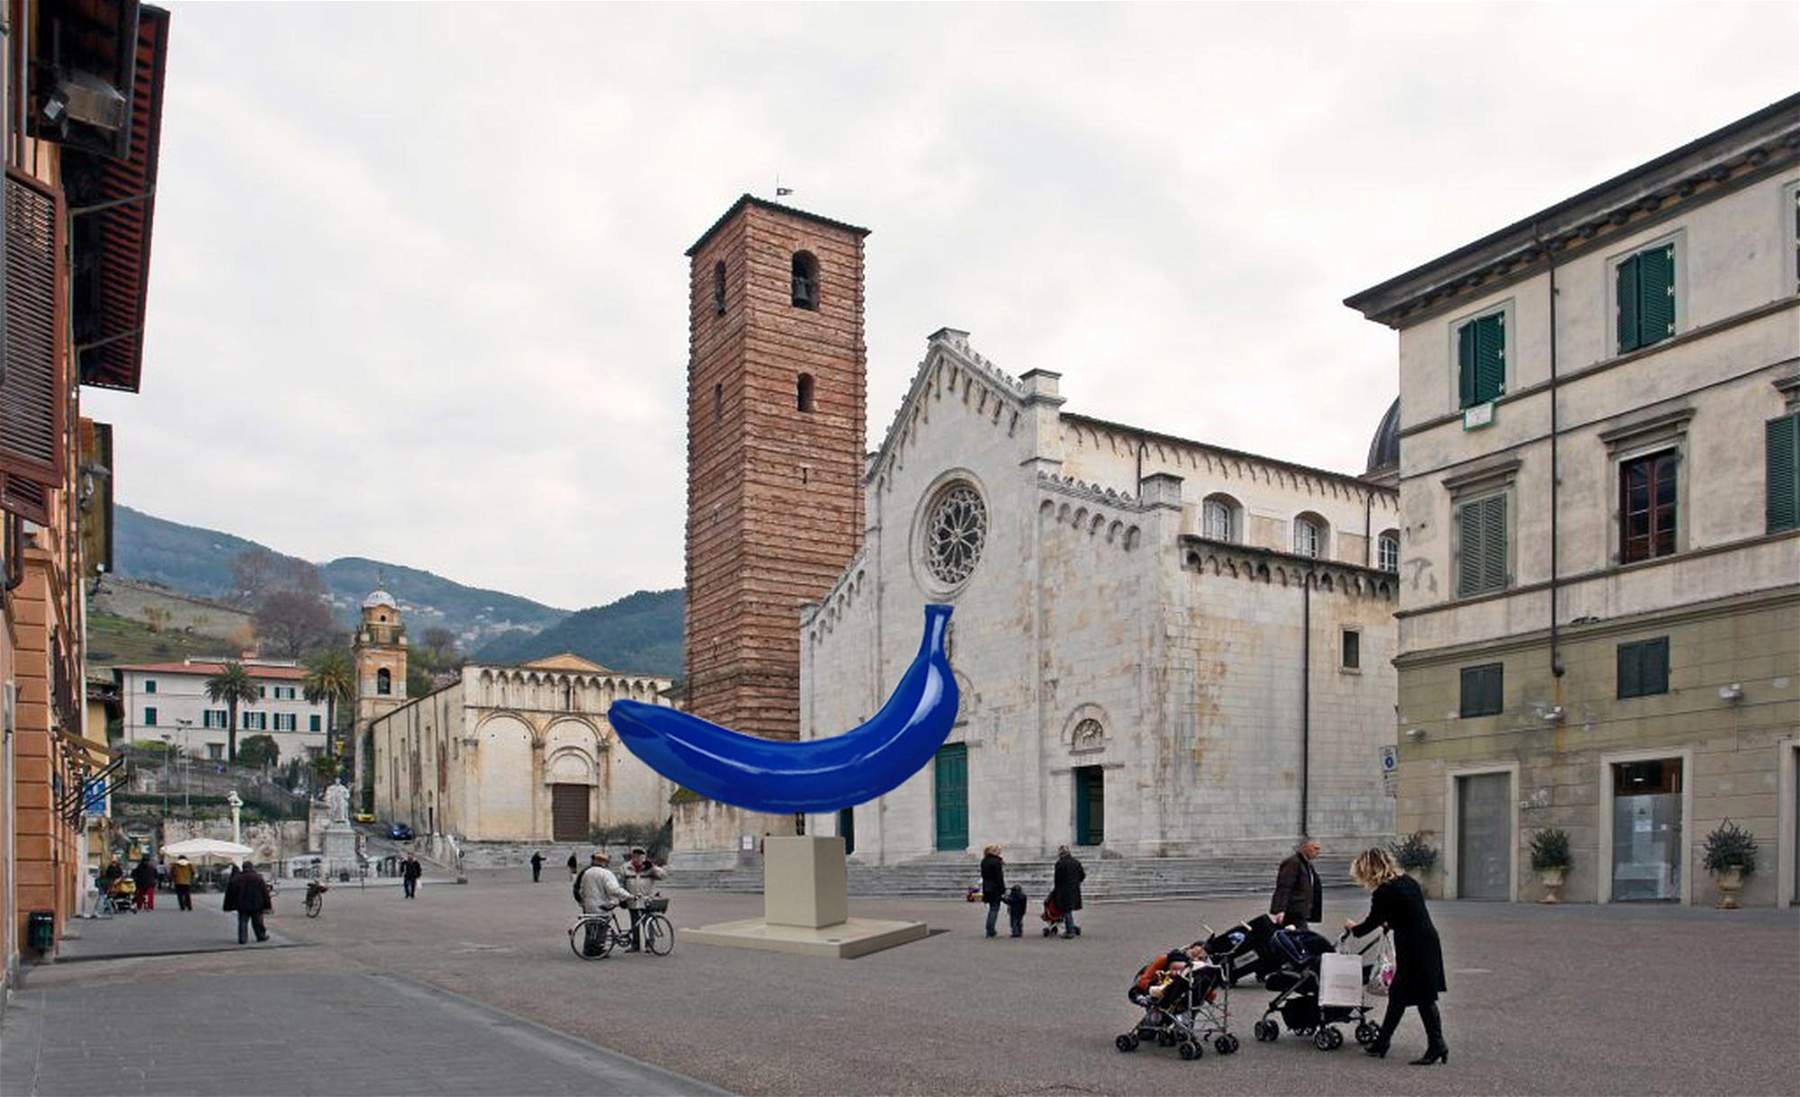 La banane bleue géante de Giuseppe Veneziano envahit l'une des plus belles places de Toscane